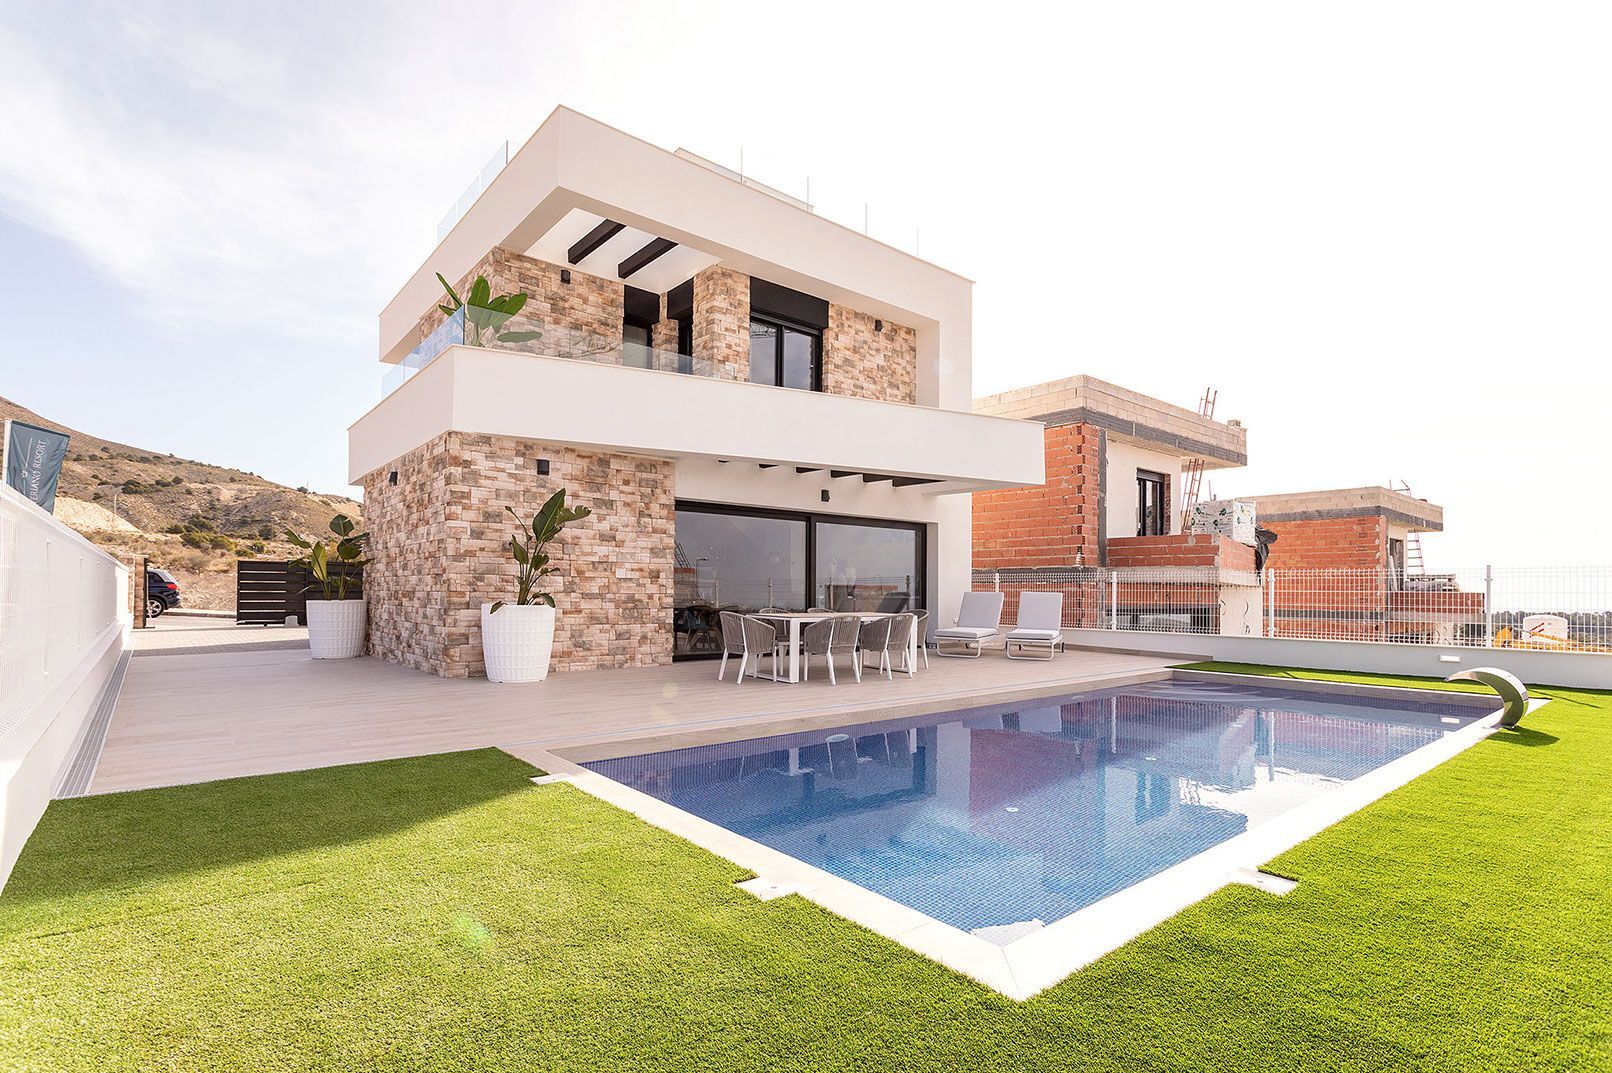 Luxe villa's met eigen zwembad, ruim perceel